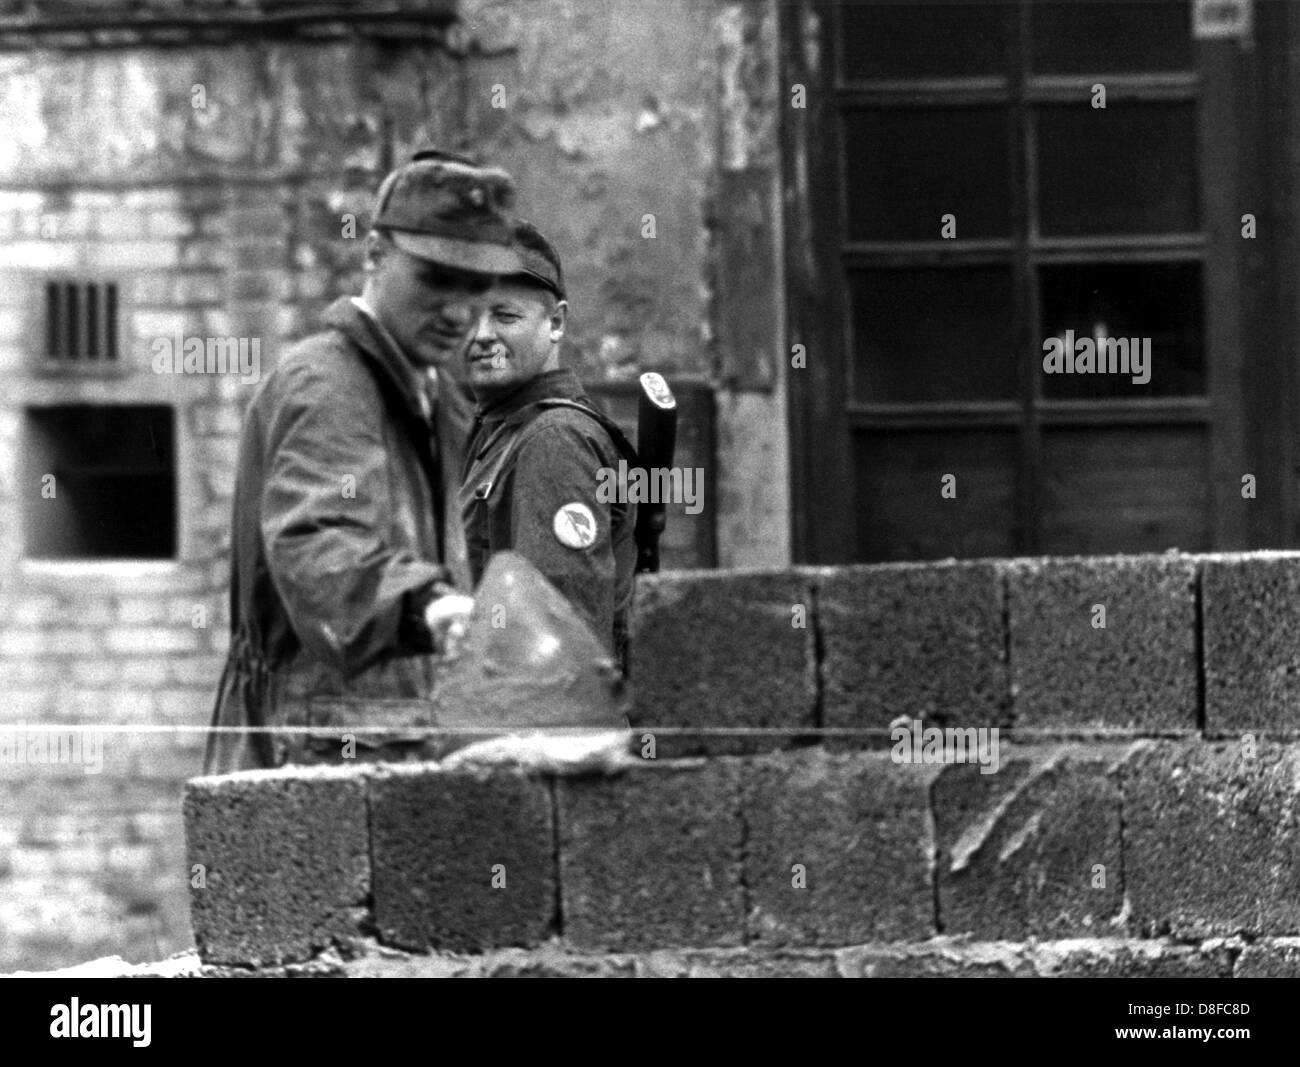 Un travailleur de la construction de Berlin est un errects-tête haut mur dans le sens de 'Lindenstrasse' street sous la supervision d'un agent de la police nationale à la Place de Potsdam à la frontière du secteur soviéto-américain de Berlin, RDA, 18 août 1961. Déjà dans la matinée du 13 août, les forces armées de la RDA avait commencé à isoler Berlin-est avec barrages routiers et les barbelés. Le mur est censé empêcher les fugitifs d'entrer dans l'ouest de Berlin. Banque D'Images